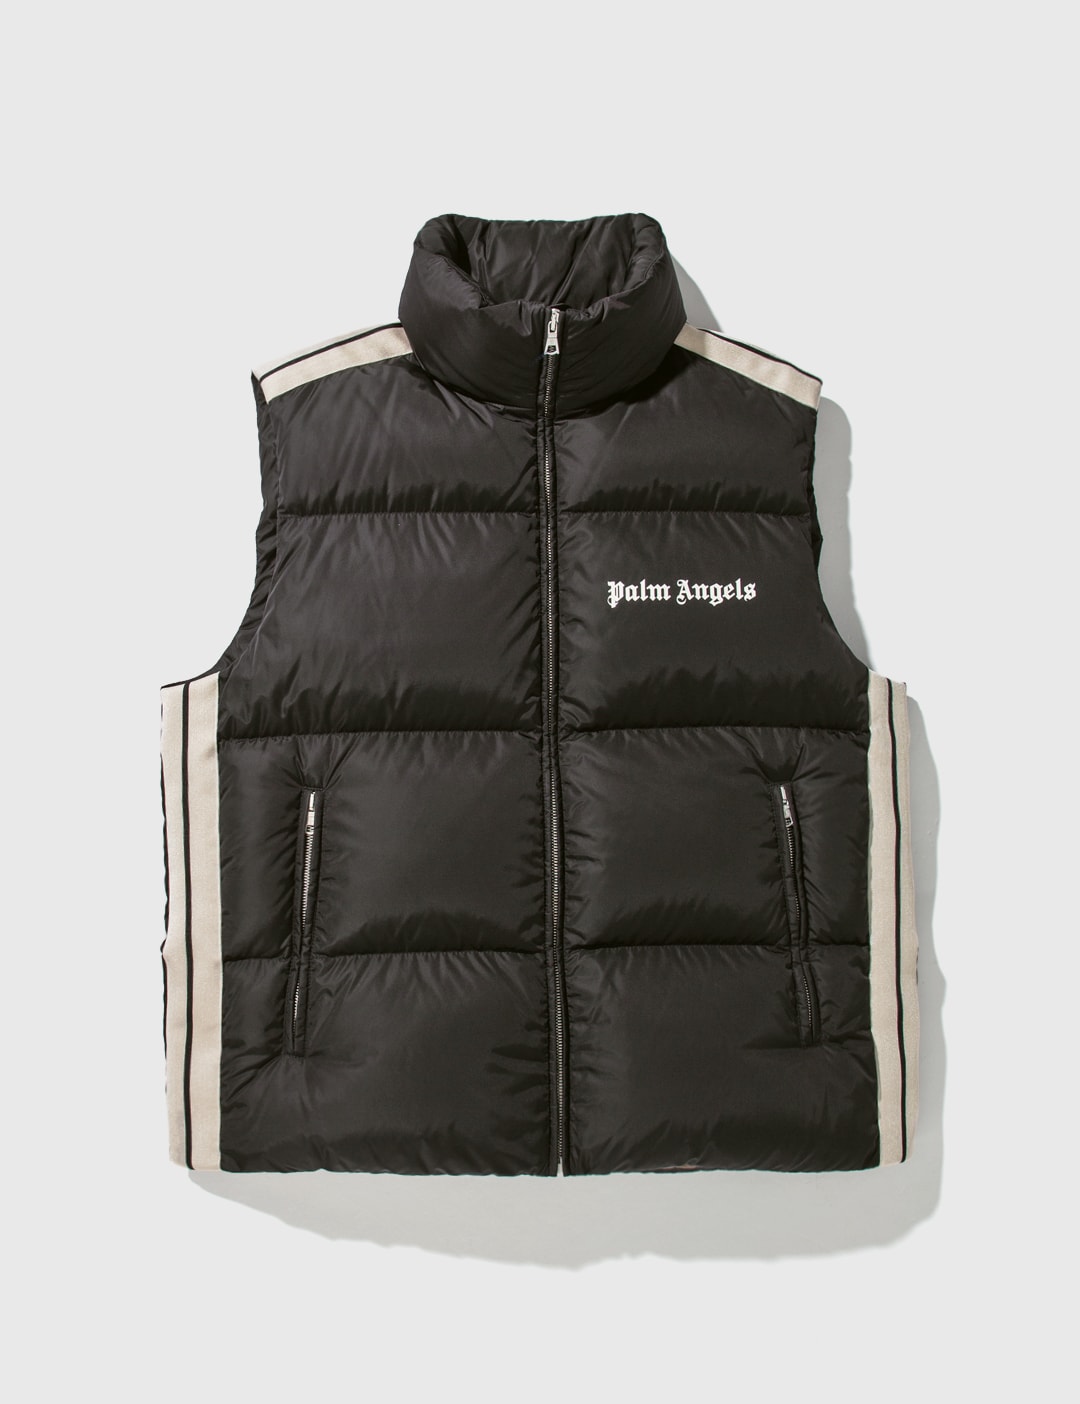 Moncler x Palm Angels - Jackets, Coats & Vests